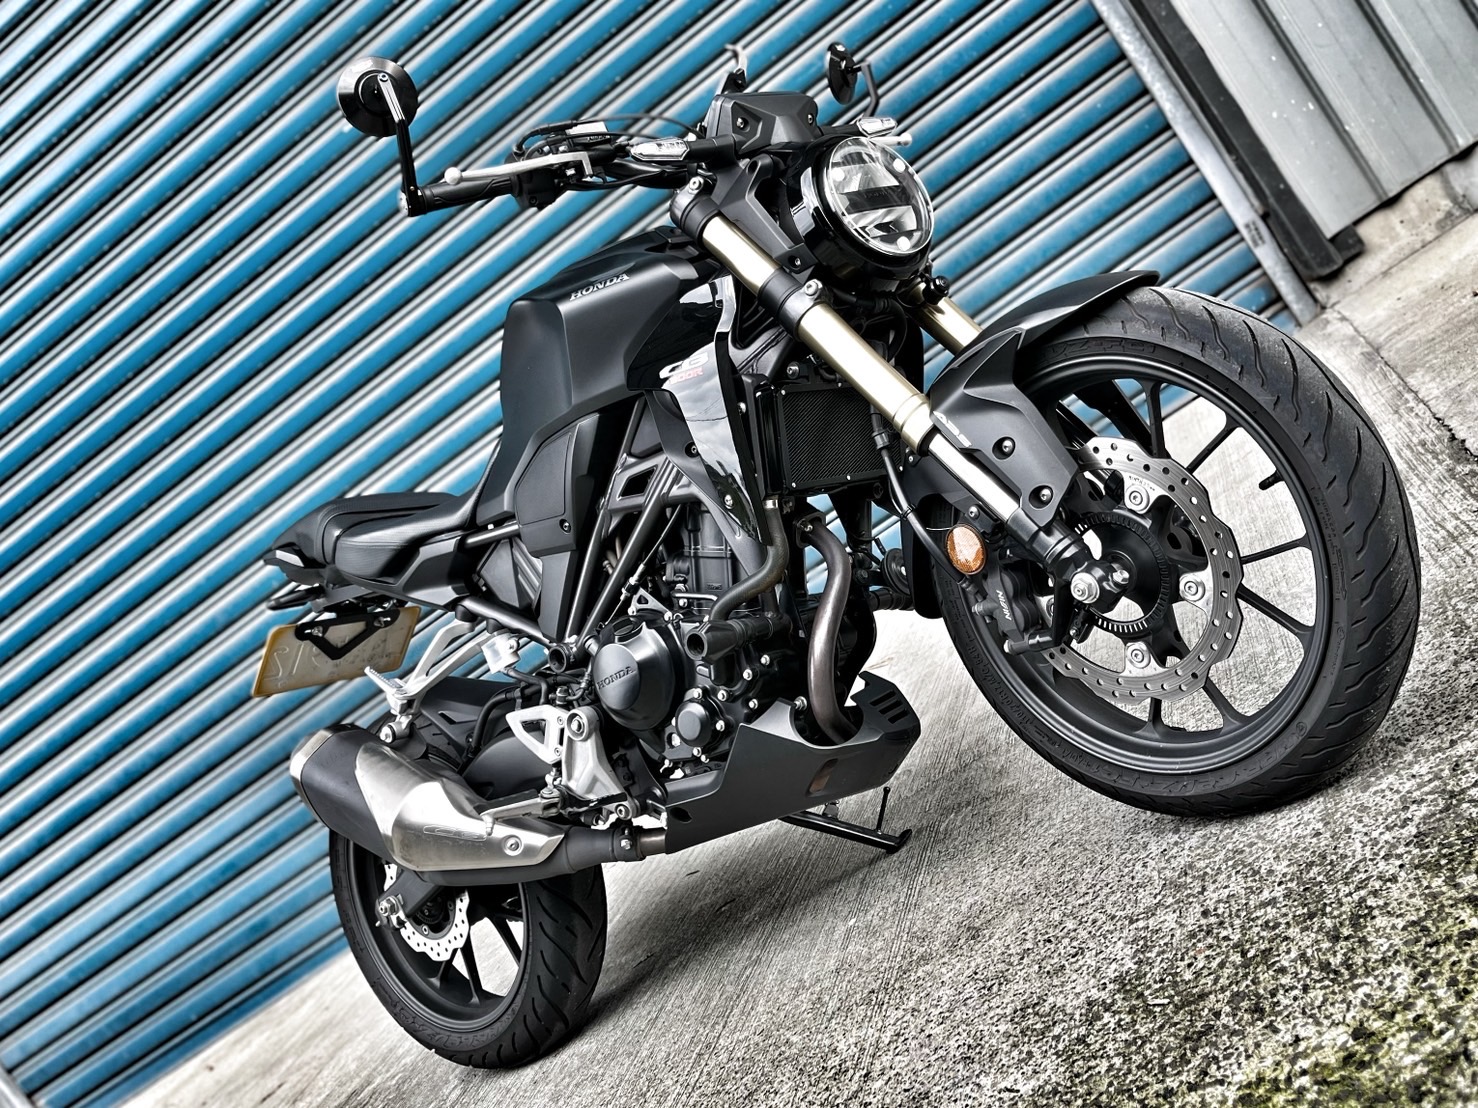 【小資族二手重機買賣】HONDA CB300R - 「Webike-摩托車市」 無倒無摔 里程保證 小資族二手重機買賣